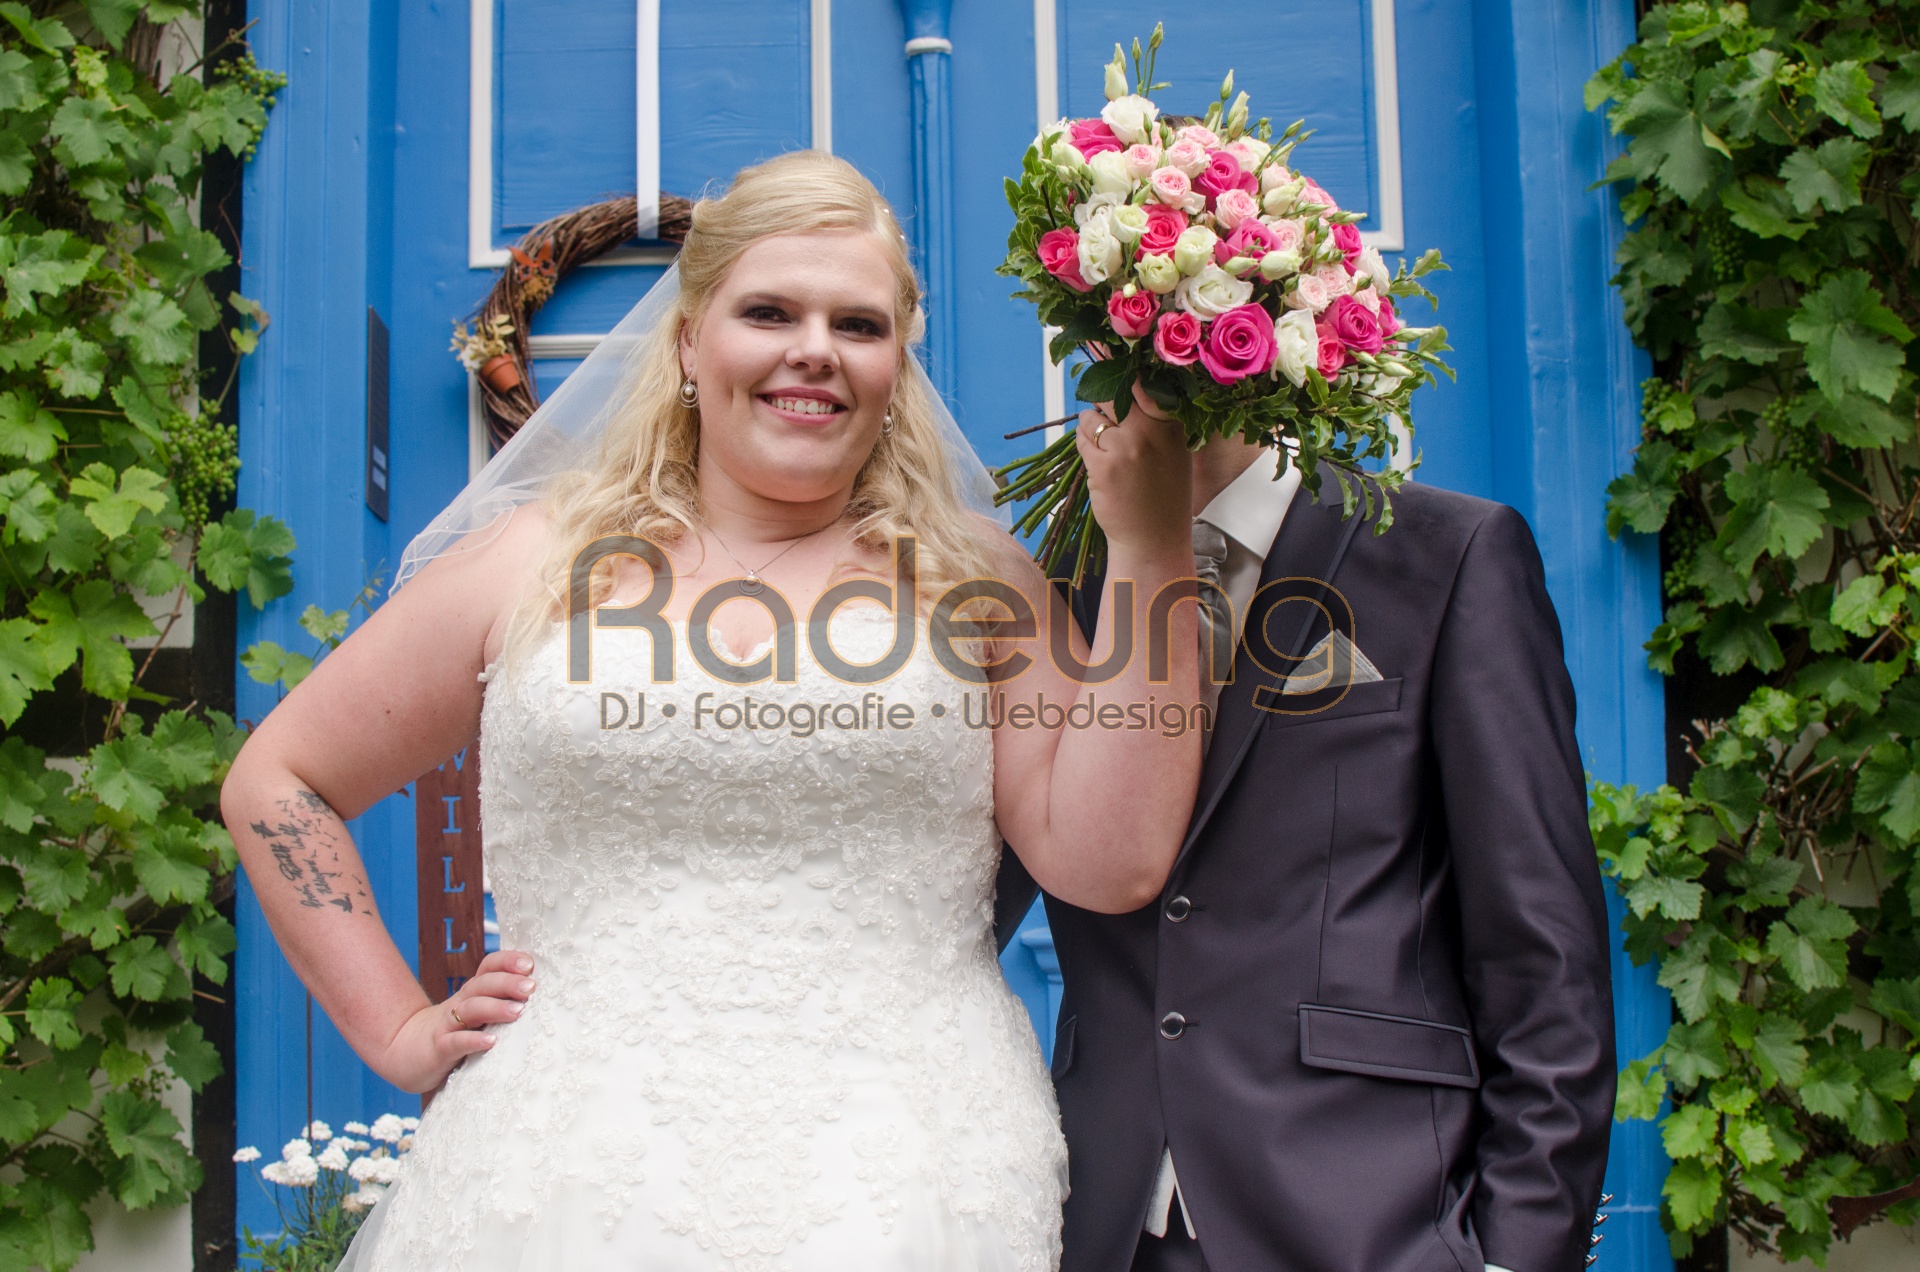 Ein Brautpaar steht vor einer blauen Haustür. Die Braut hält einen Blumenstrauß vor das Gesicht des Bräutigam.